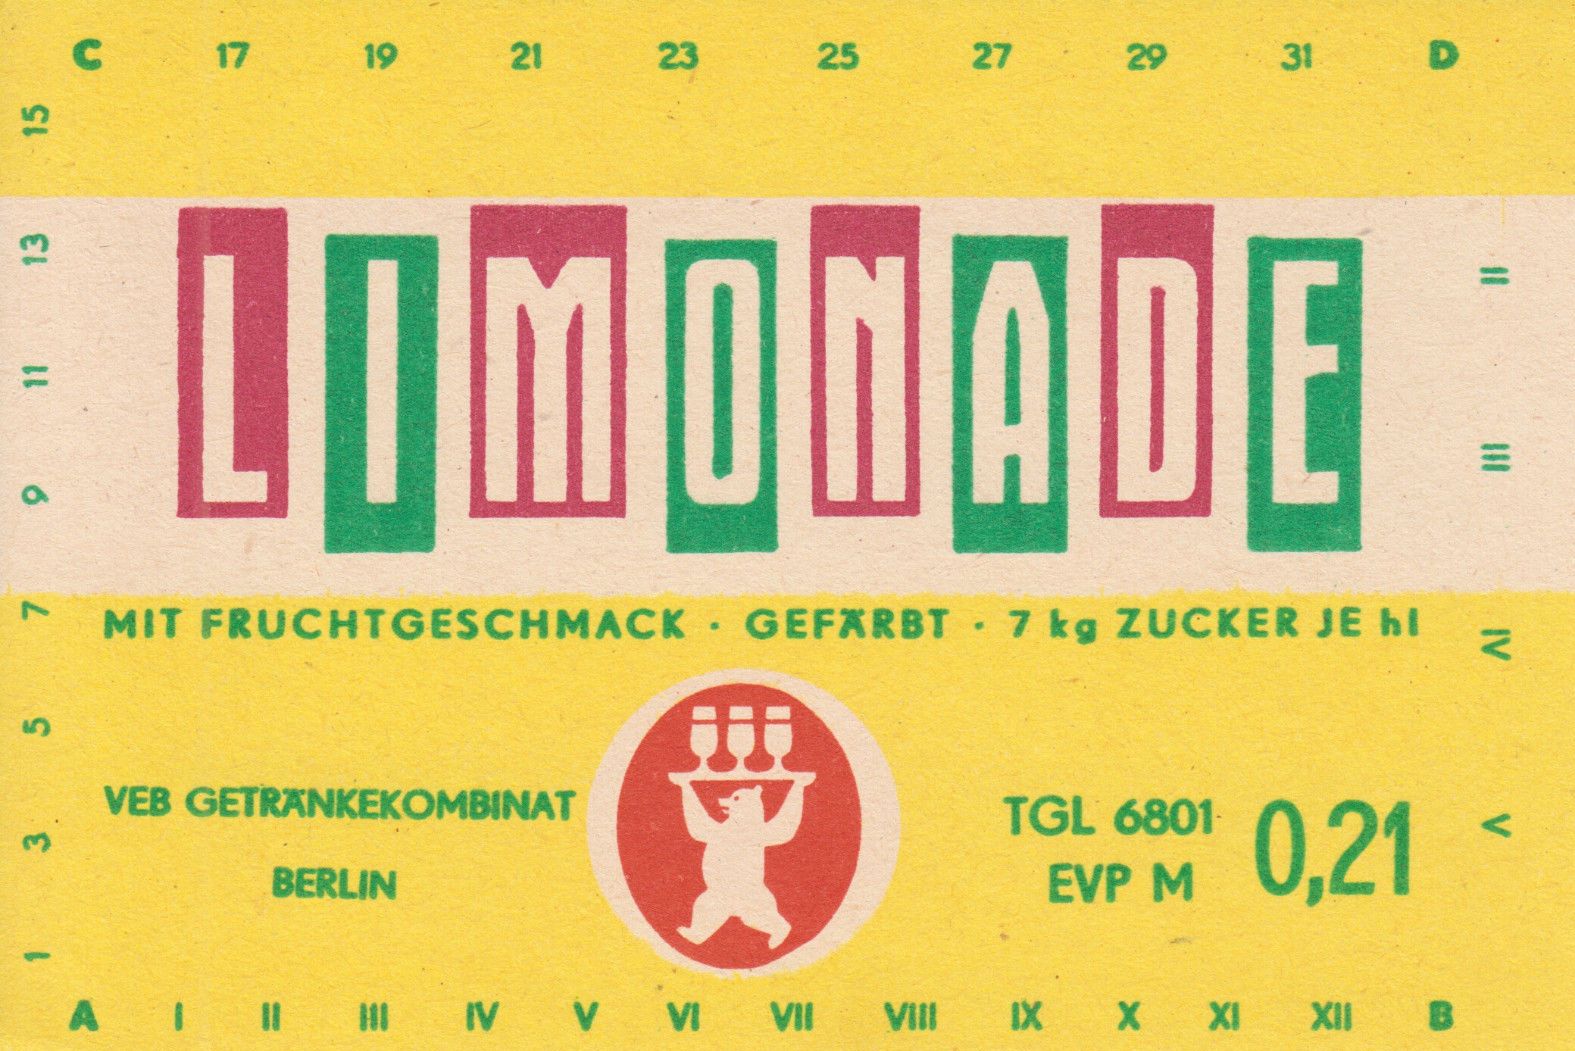 Limonade mit Fruchtgeschmack, VEB Getränkekombinat Berlin (Bild: historisches Etikett)